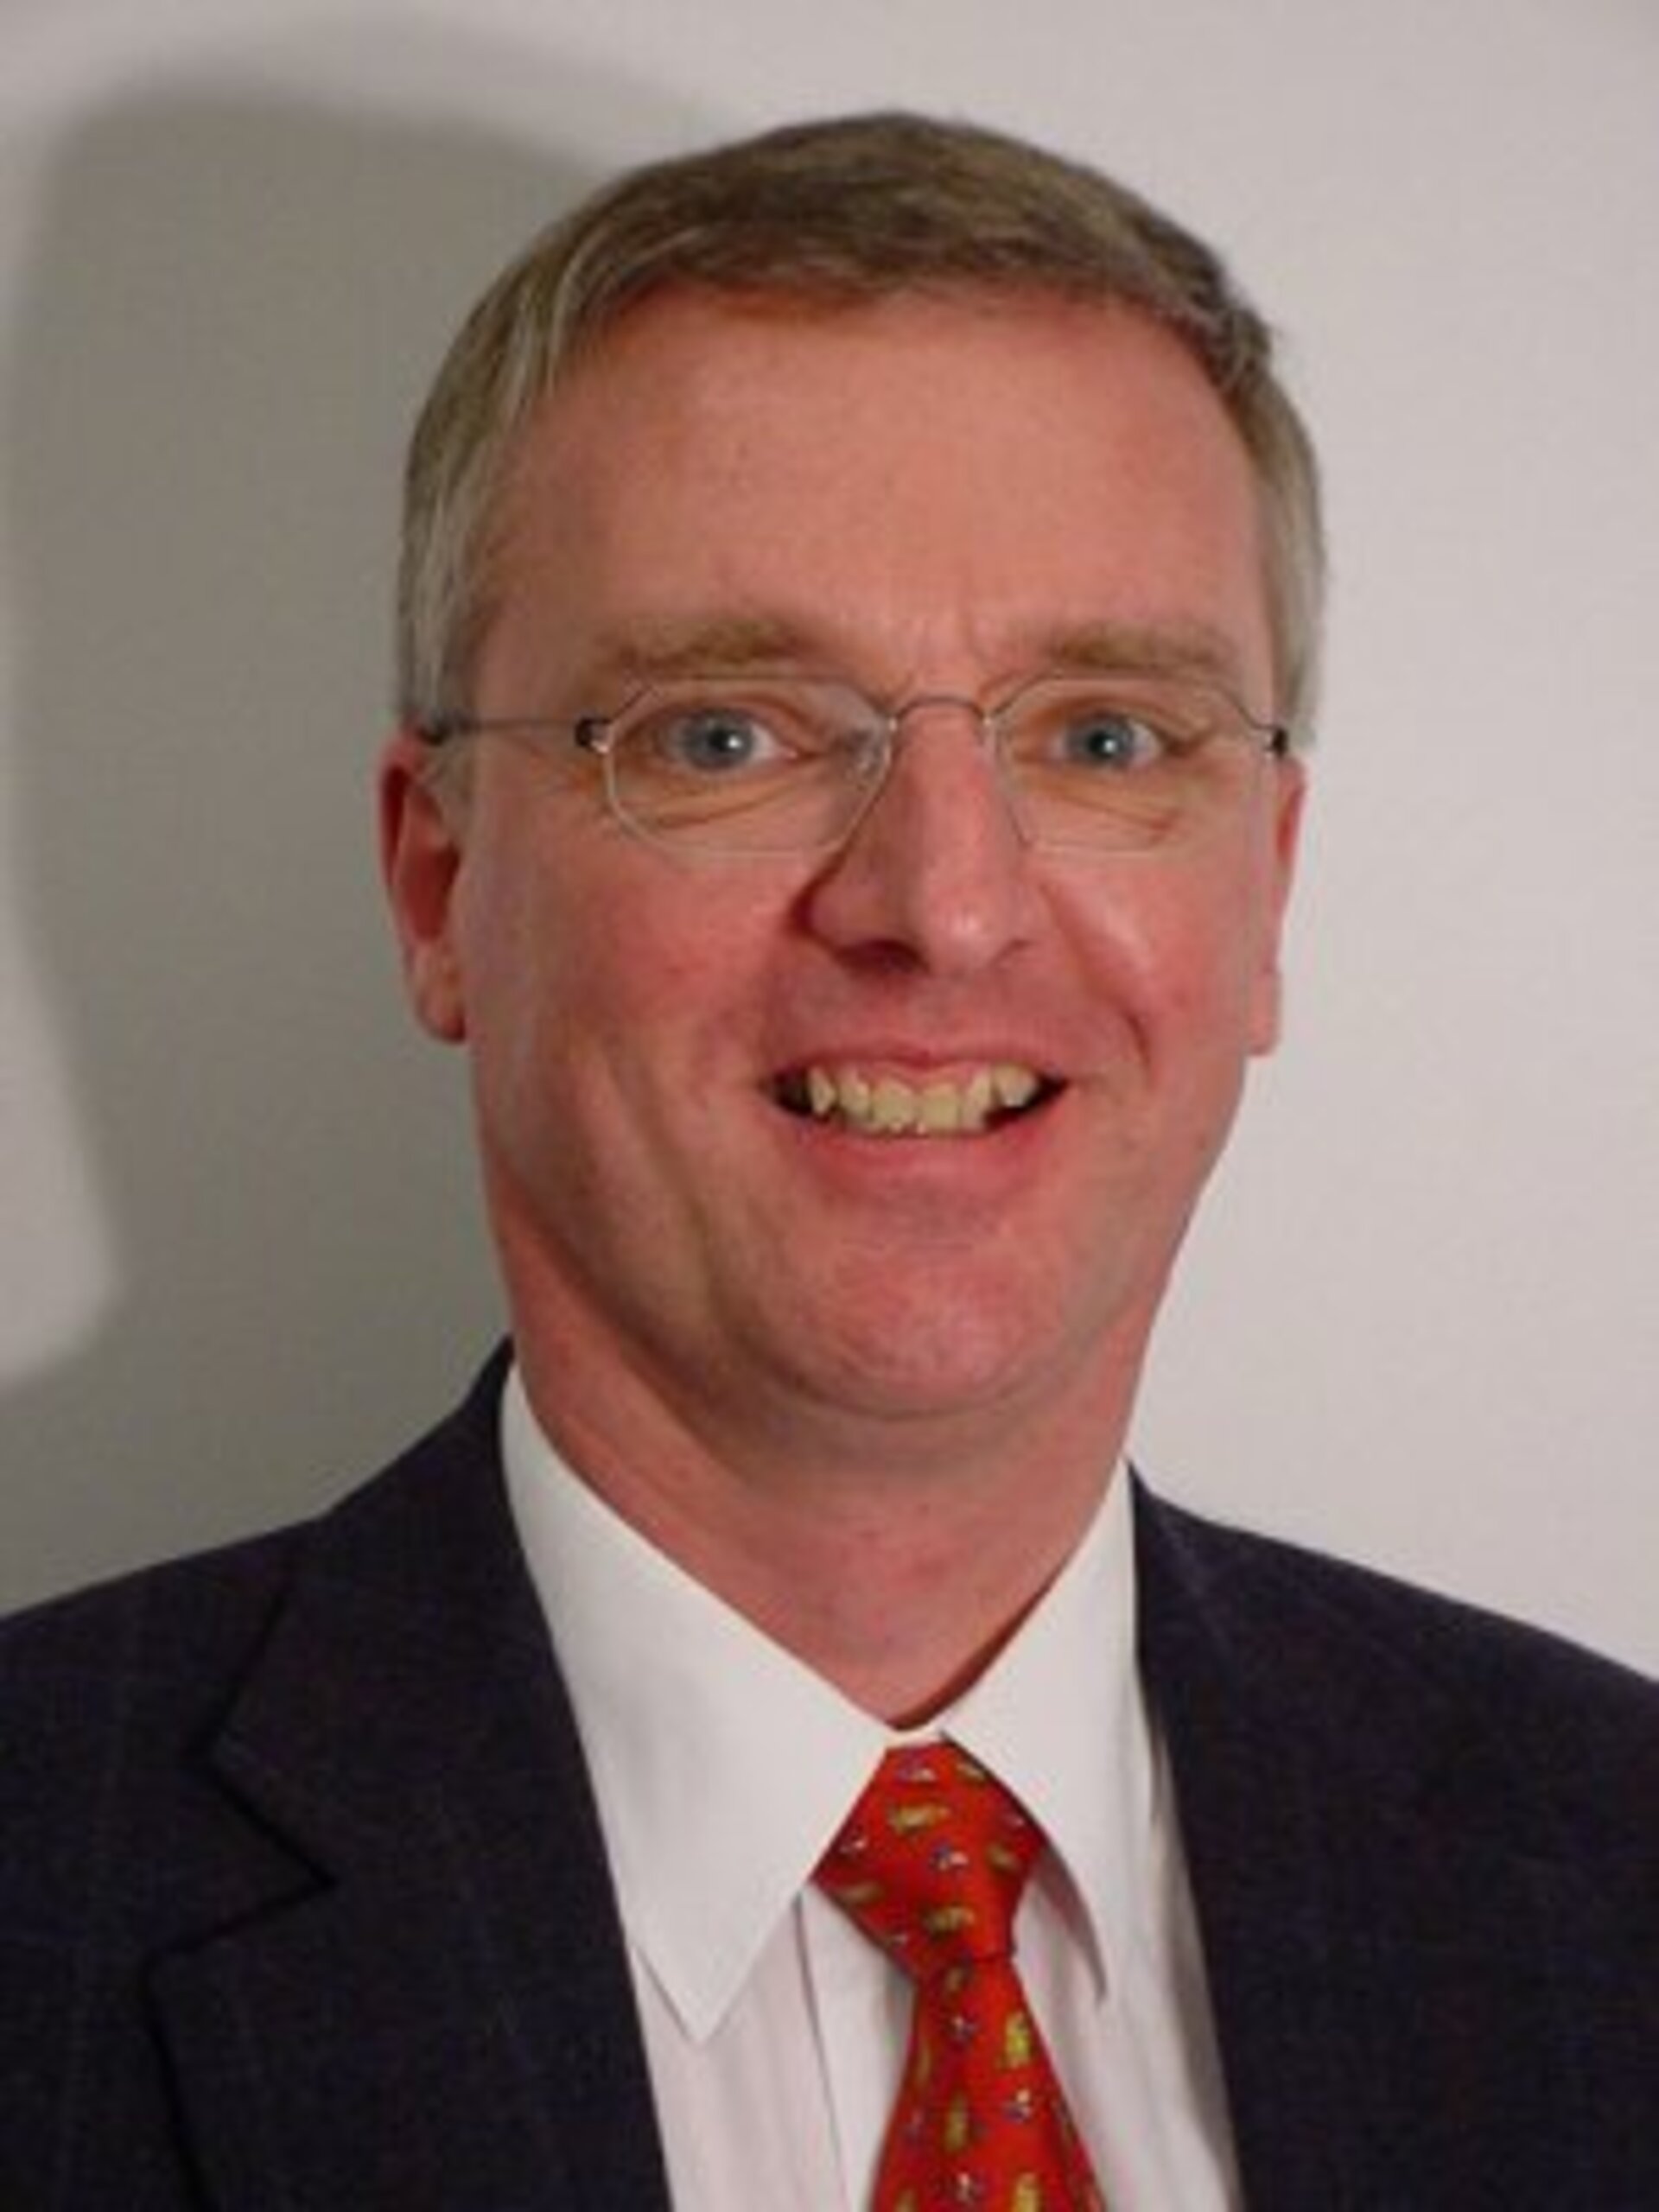 Tim de Zeeuw is benoemd tot directeur-generaal van het European Southern Observatory